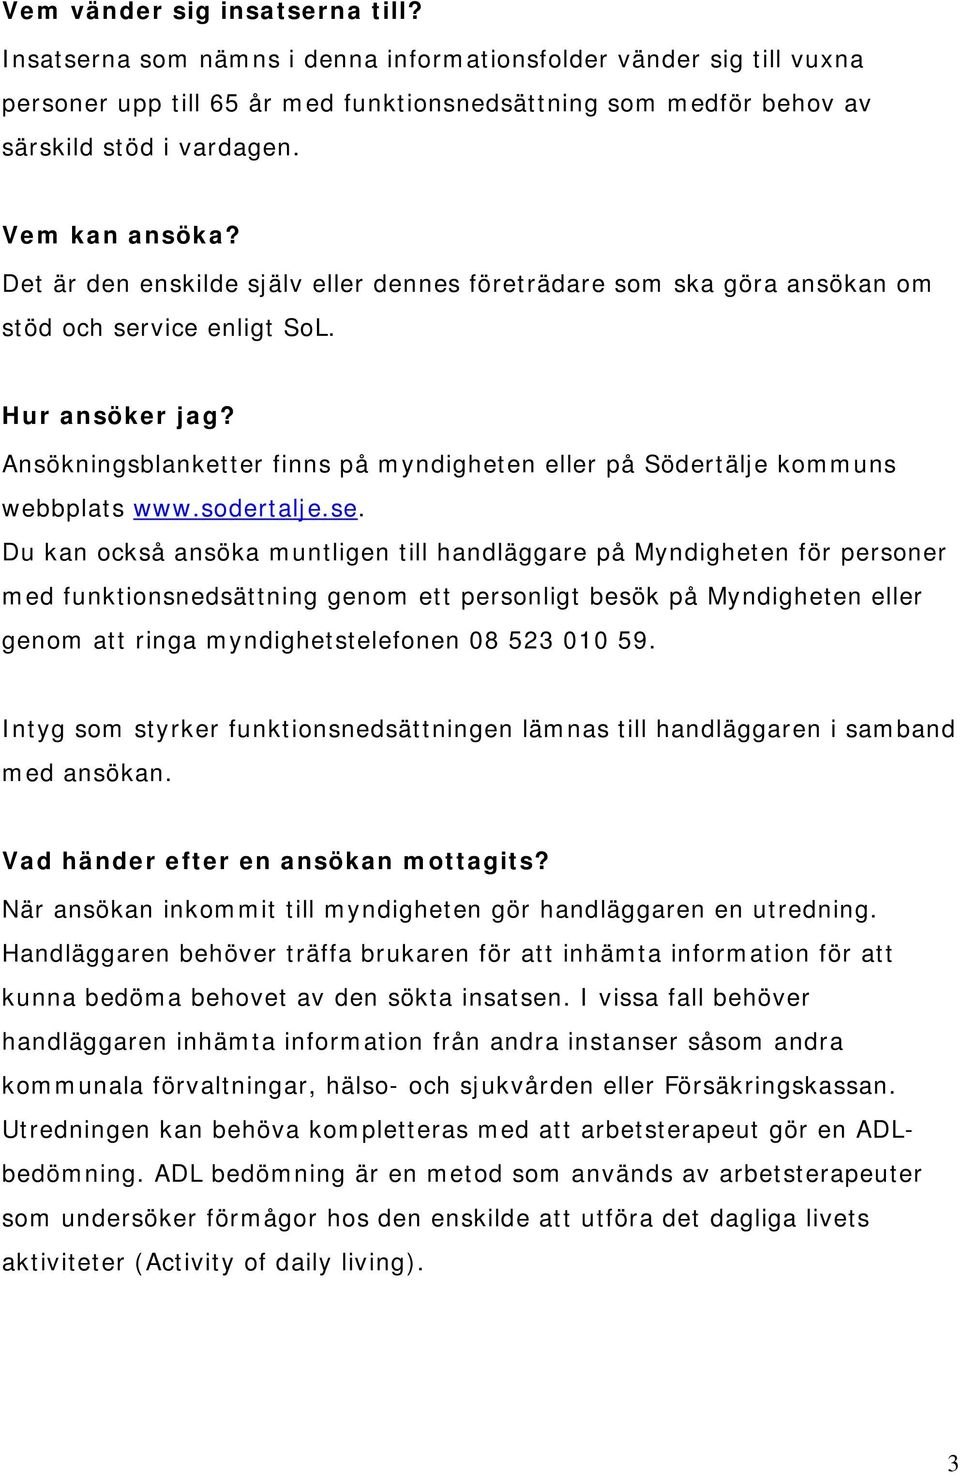 Ansökningsblanketter finns på myndigheten eller på Södertälje kommuns webbplats www.sodertalje.se.